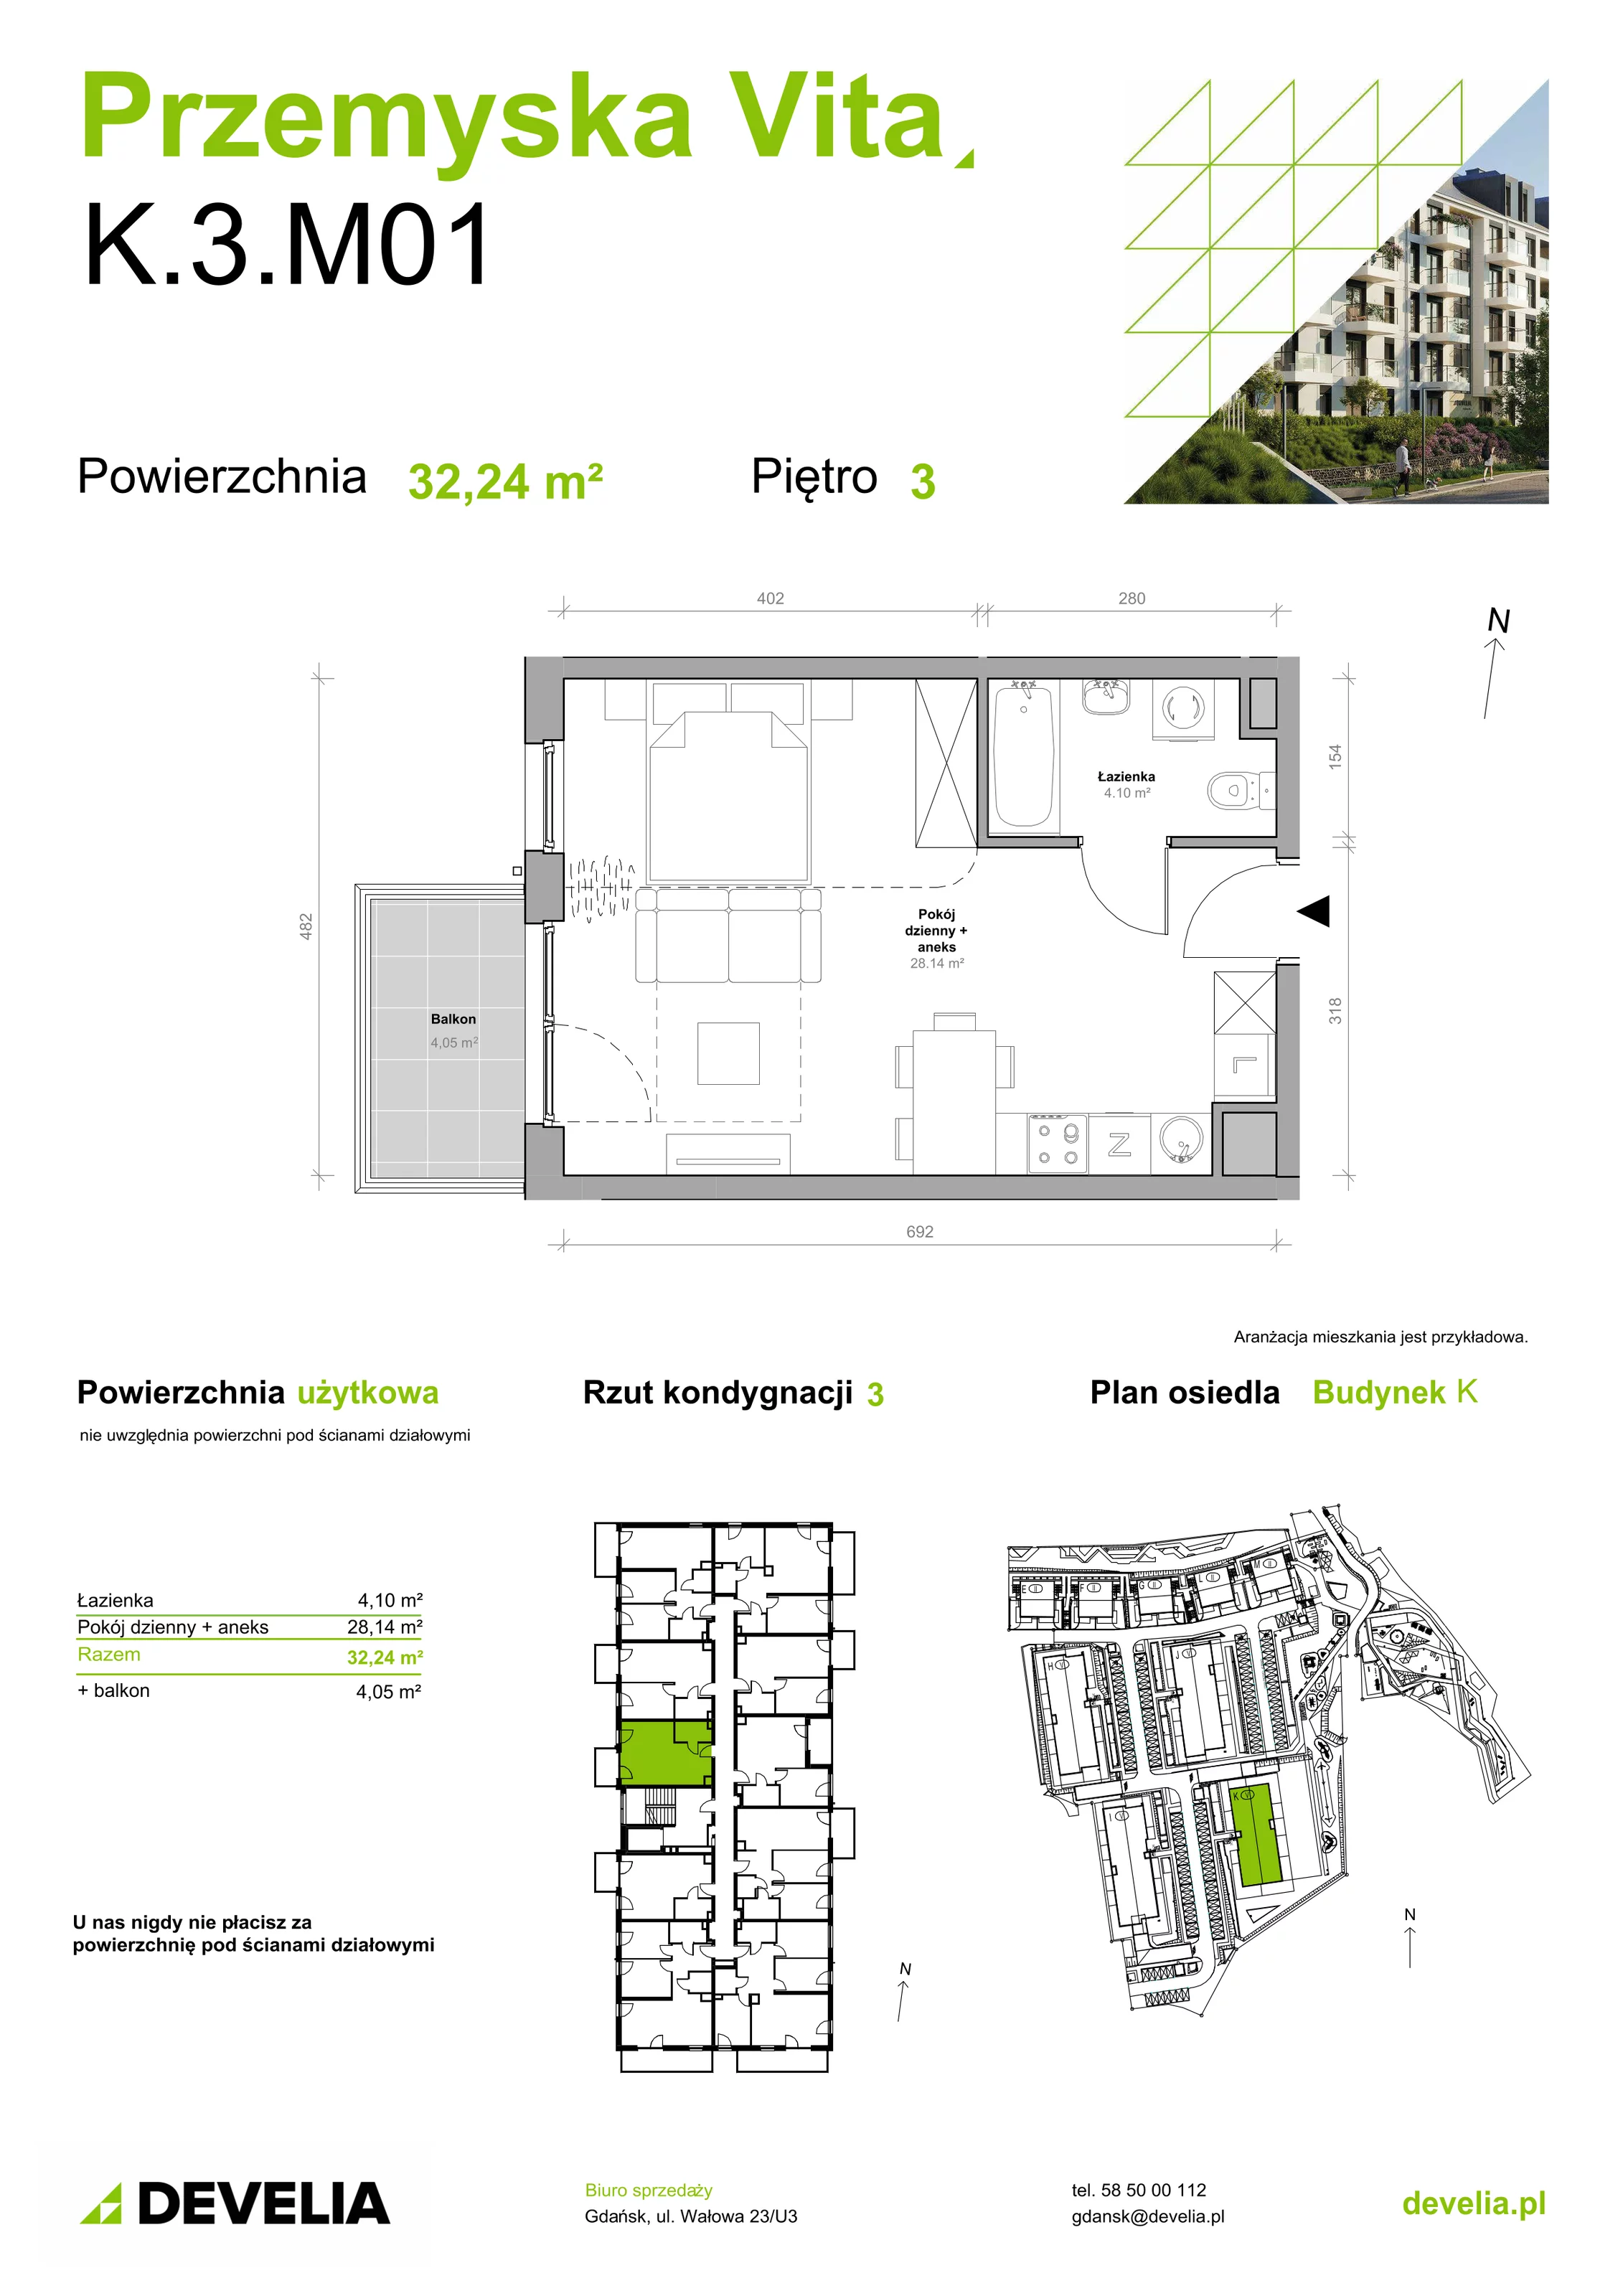 Mieszkanie 32,24 m², piętro 3, oferta nr K.3.M01, Przemyska Vita, Gdańsk, Ujeścisko-Łostowice, Ujeścisko, ul. Przemyska 37